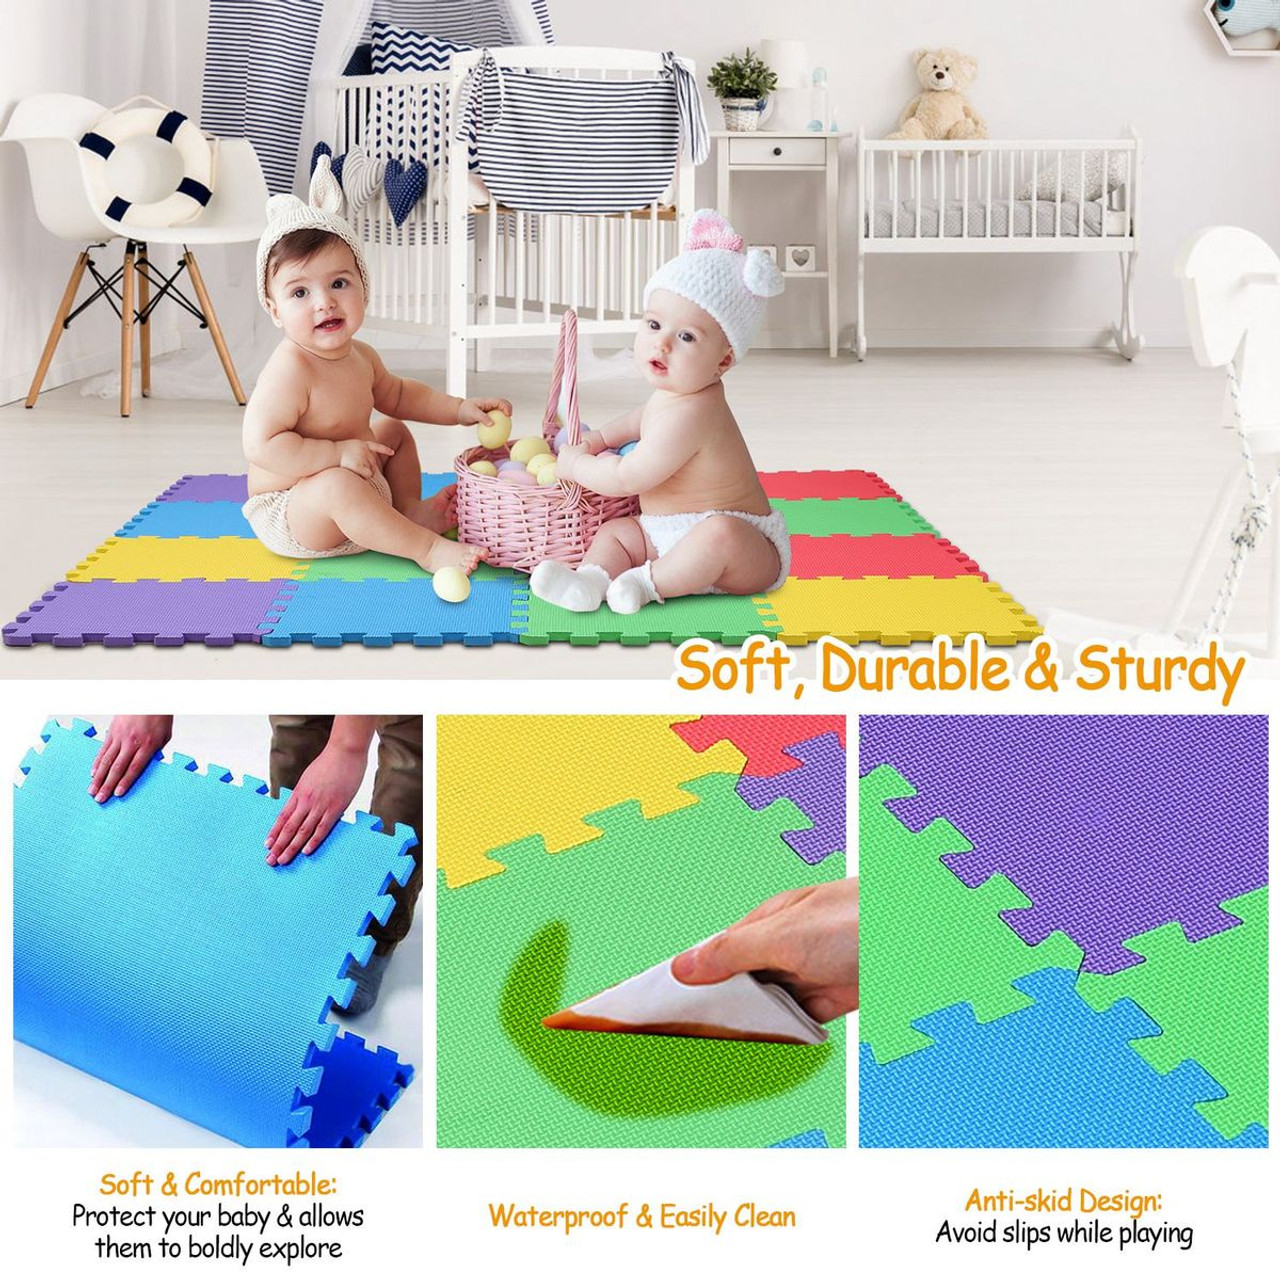 iMounTEK® Kids' 16-Piece Interlocking Playmat product image